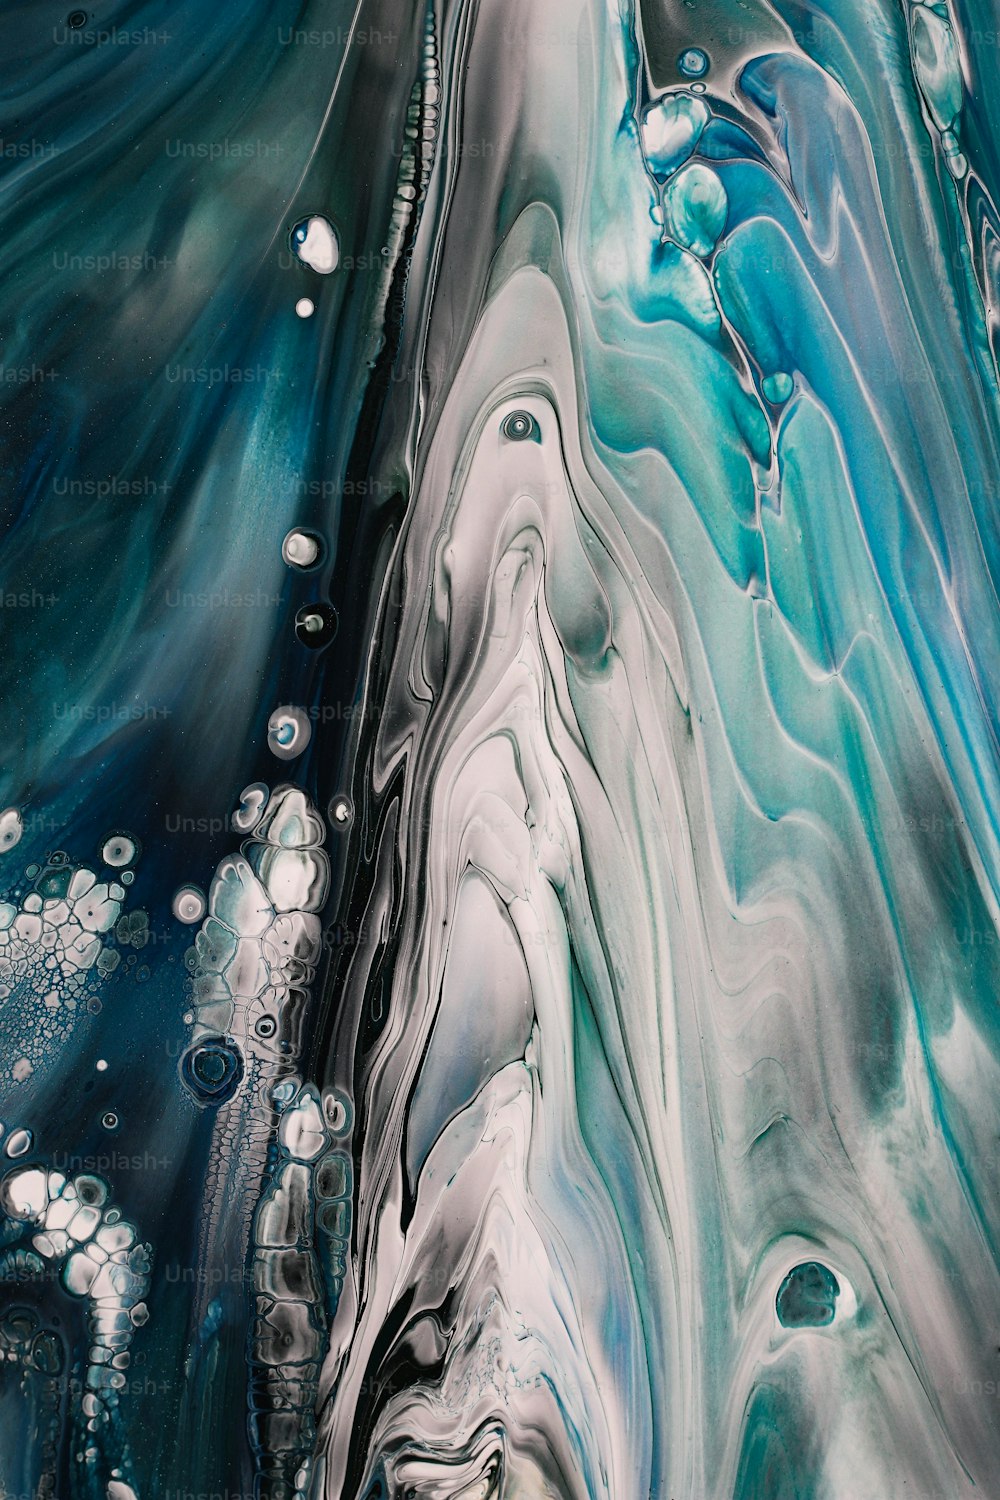 Una pintura abstracta con colores azul y blanco